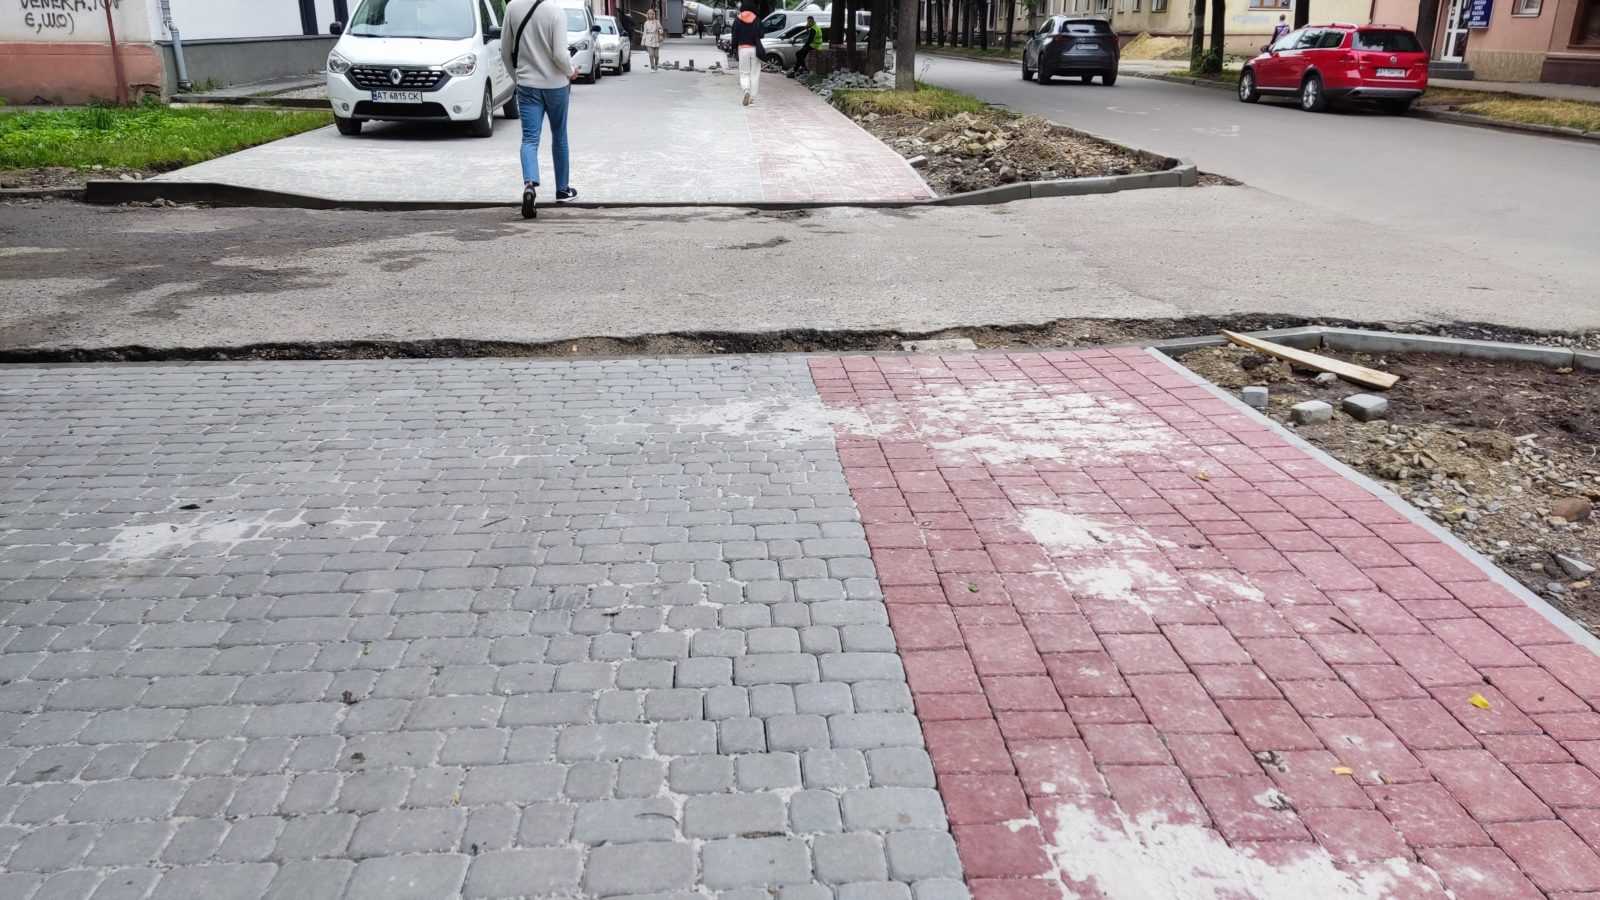 Після критики фахівців франківське УКБ вирішило переробити тротуар на Бельведерській (ФОТО)